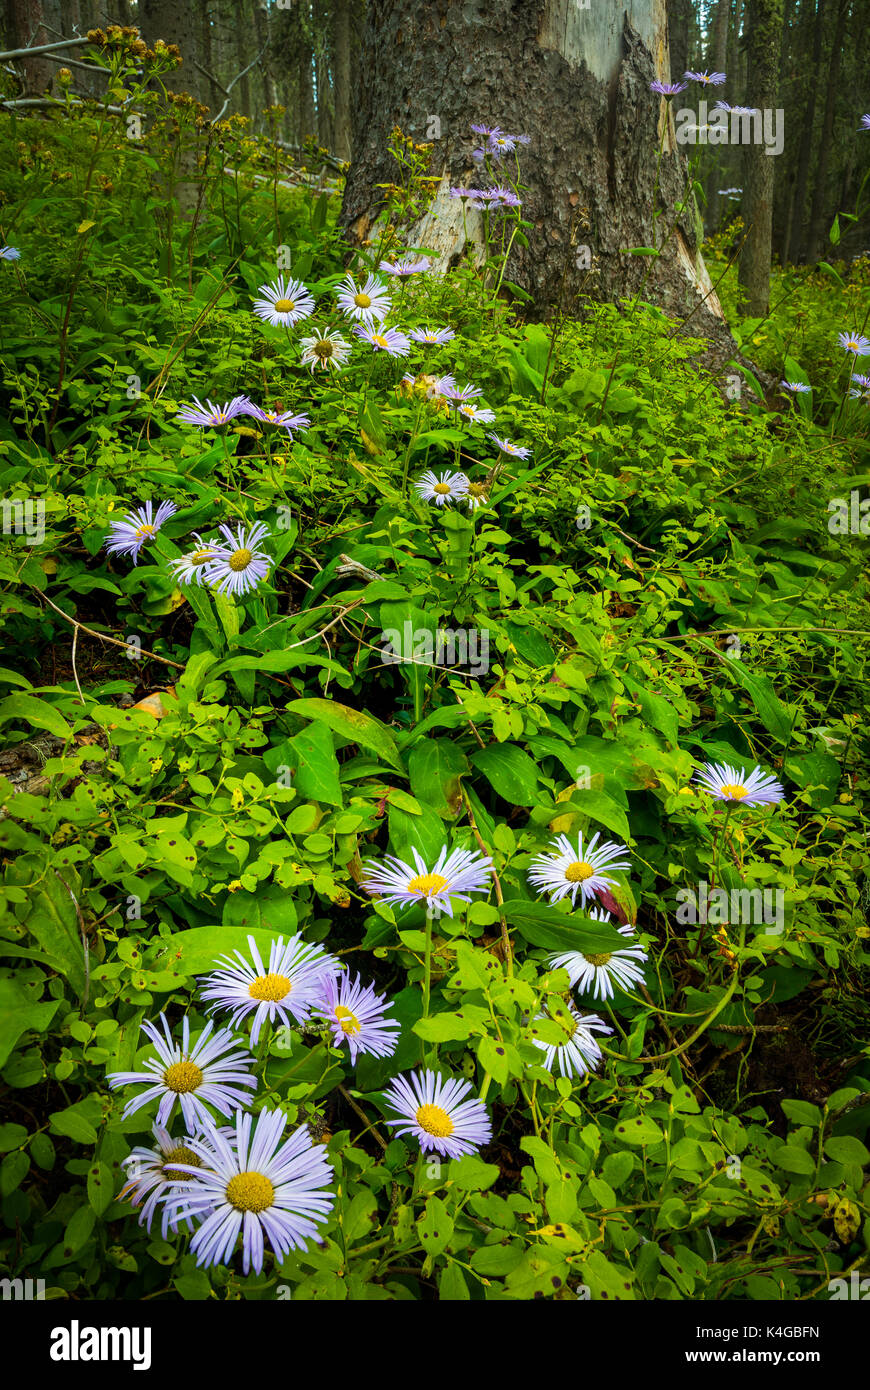 Symphyotrichum novae-angliae, communément appelé le New England aster,hairy Michaelmas-daisy ou Michaelmas daisy, est une plante herbacée vivace à fleurs. Banque D'Images